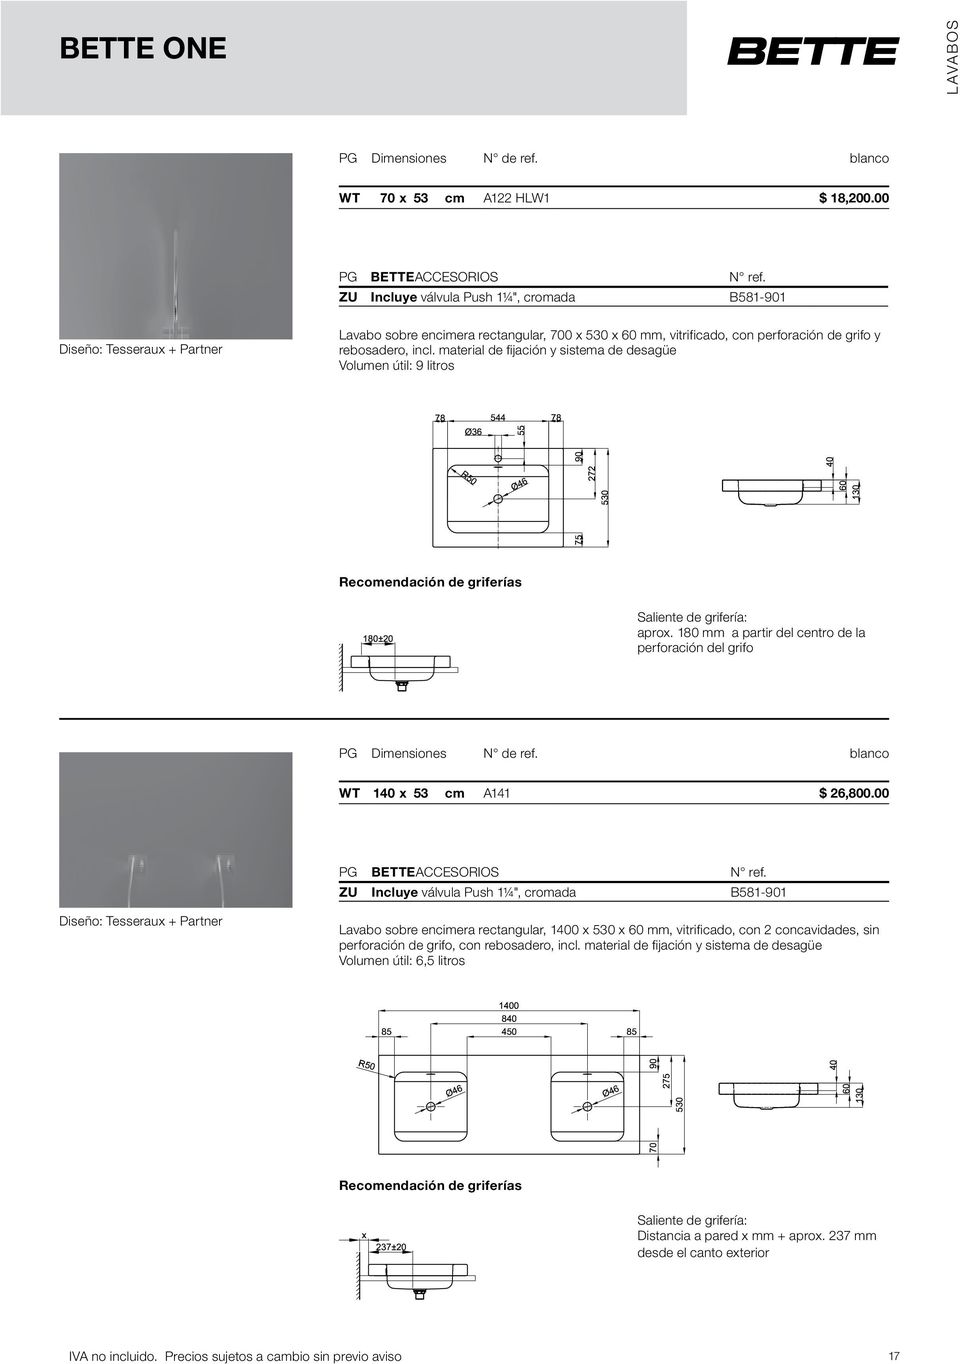 material de fijación y sistema de desagüe Volumen útil: 9 litros Recomendación de griferías Saliente de grifería: aprox. 180 mm a partir del centro de la perforación del grifo PG Dimensiones N de ref.